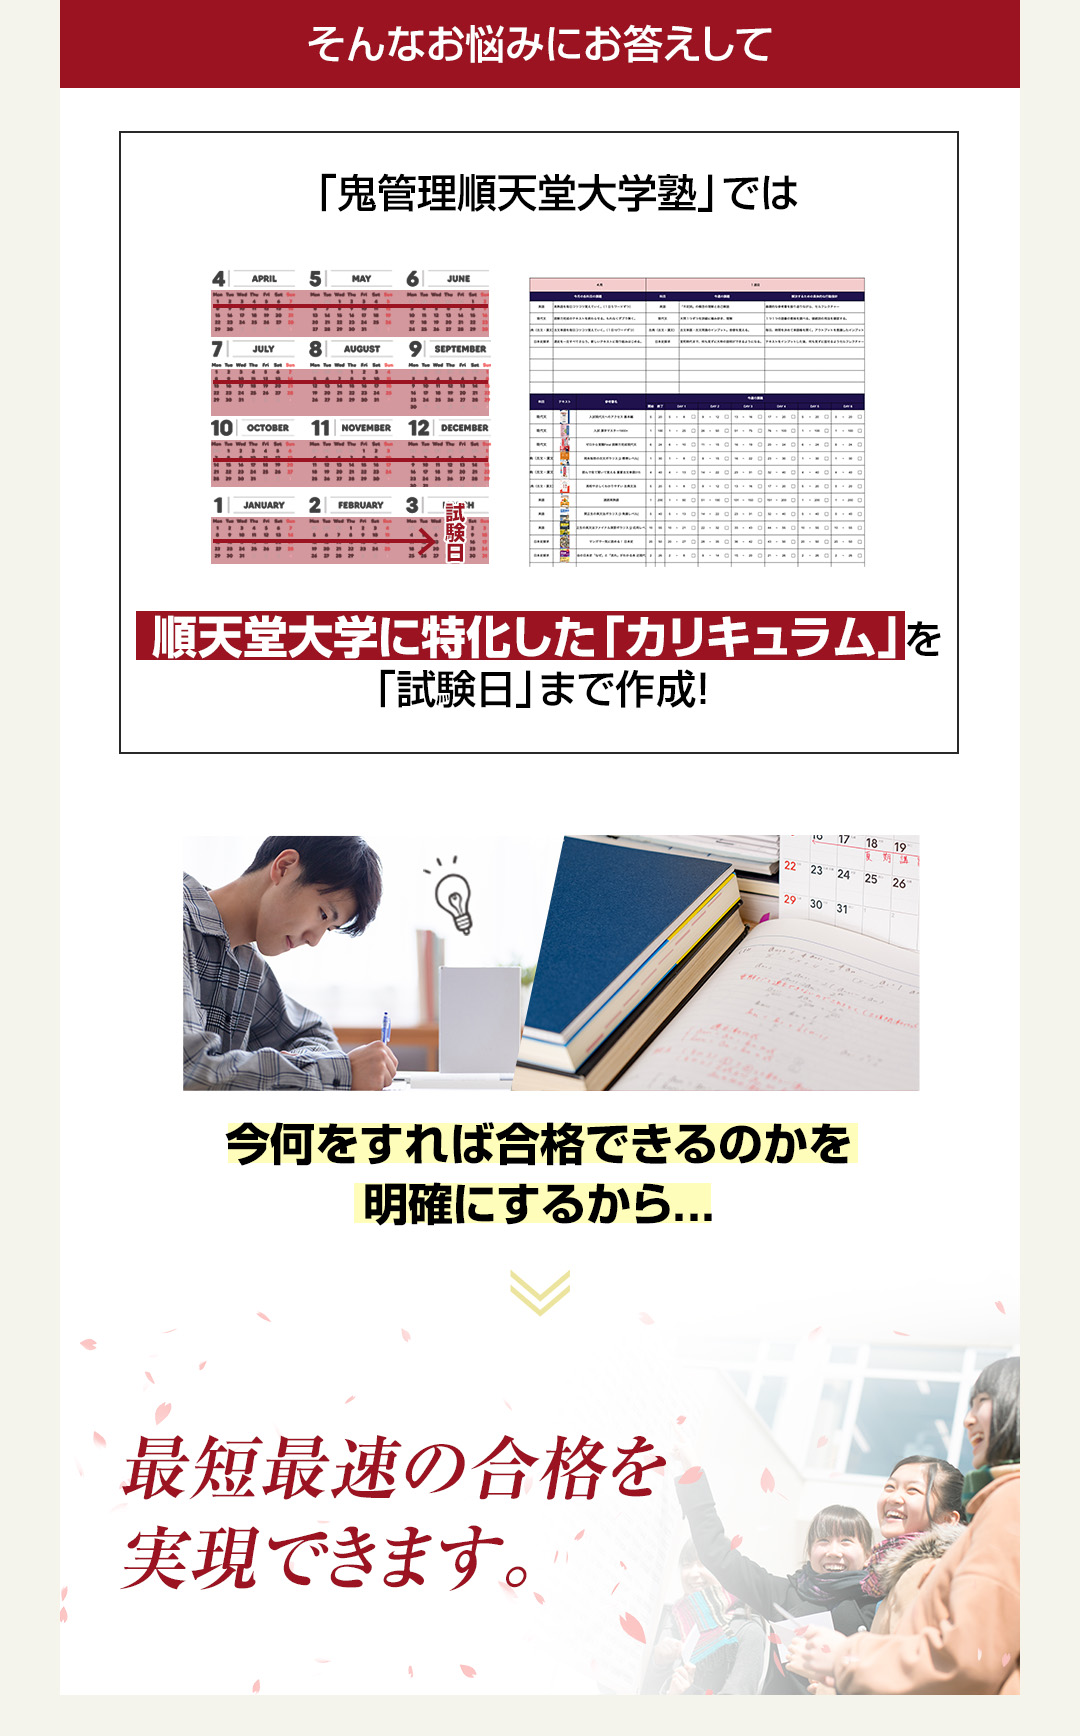 「鬼管理順天堂大学塾」では順天堂大学に特化した「カリキュラム」を「試験日」まで作成